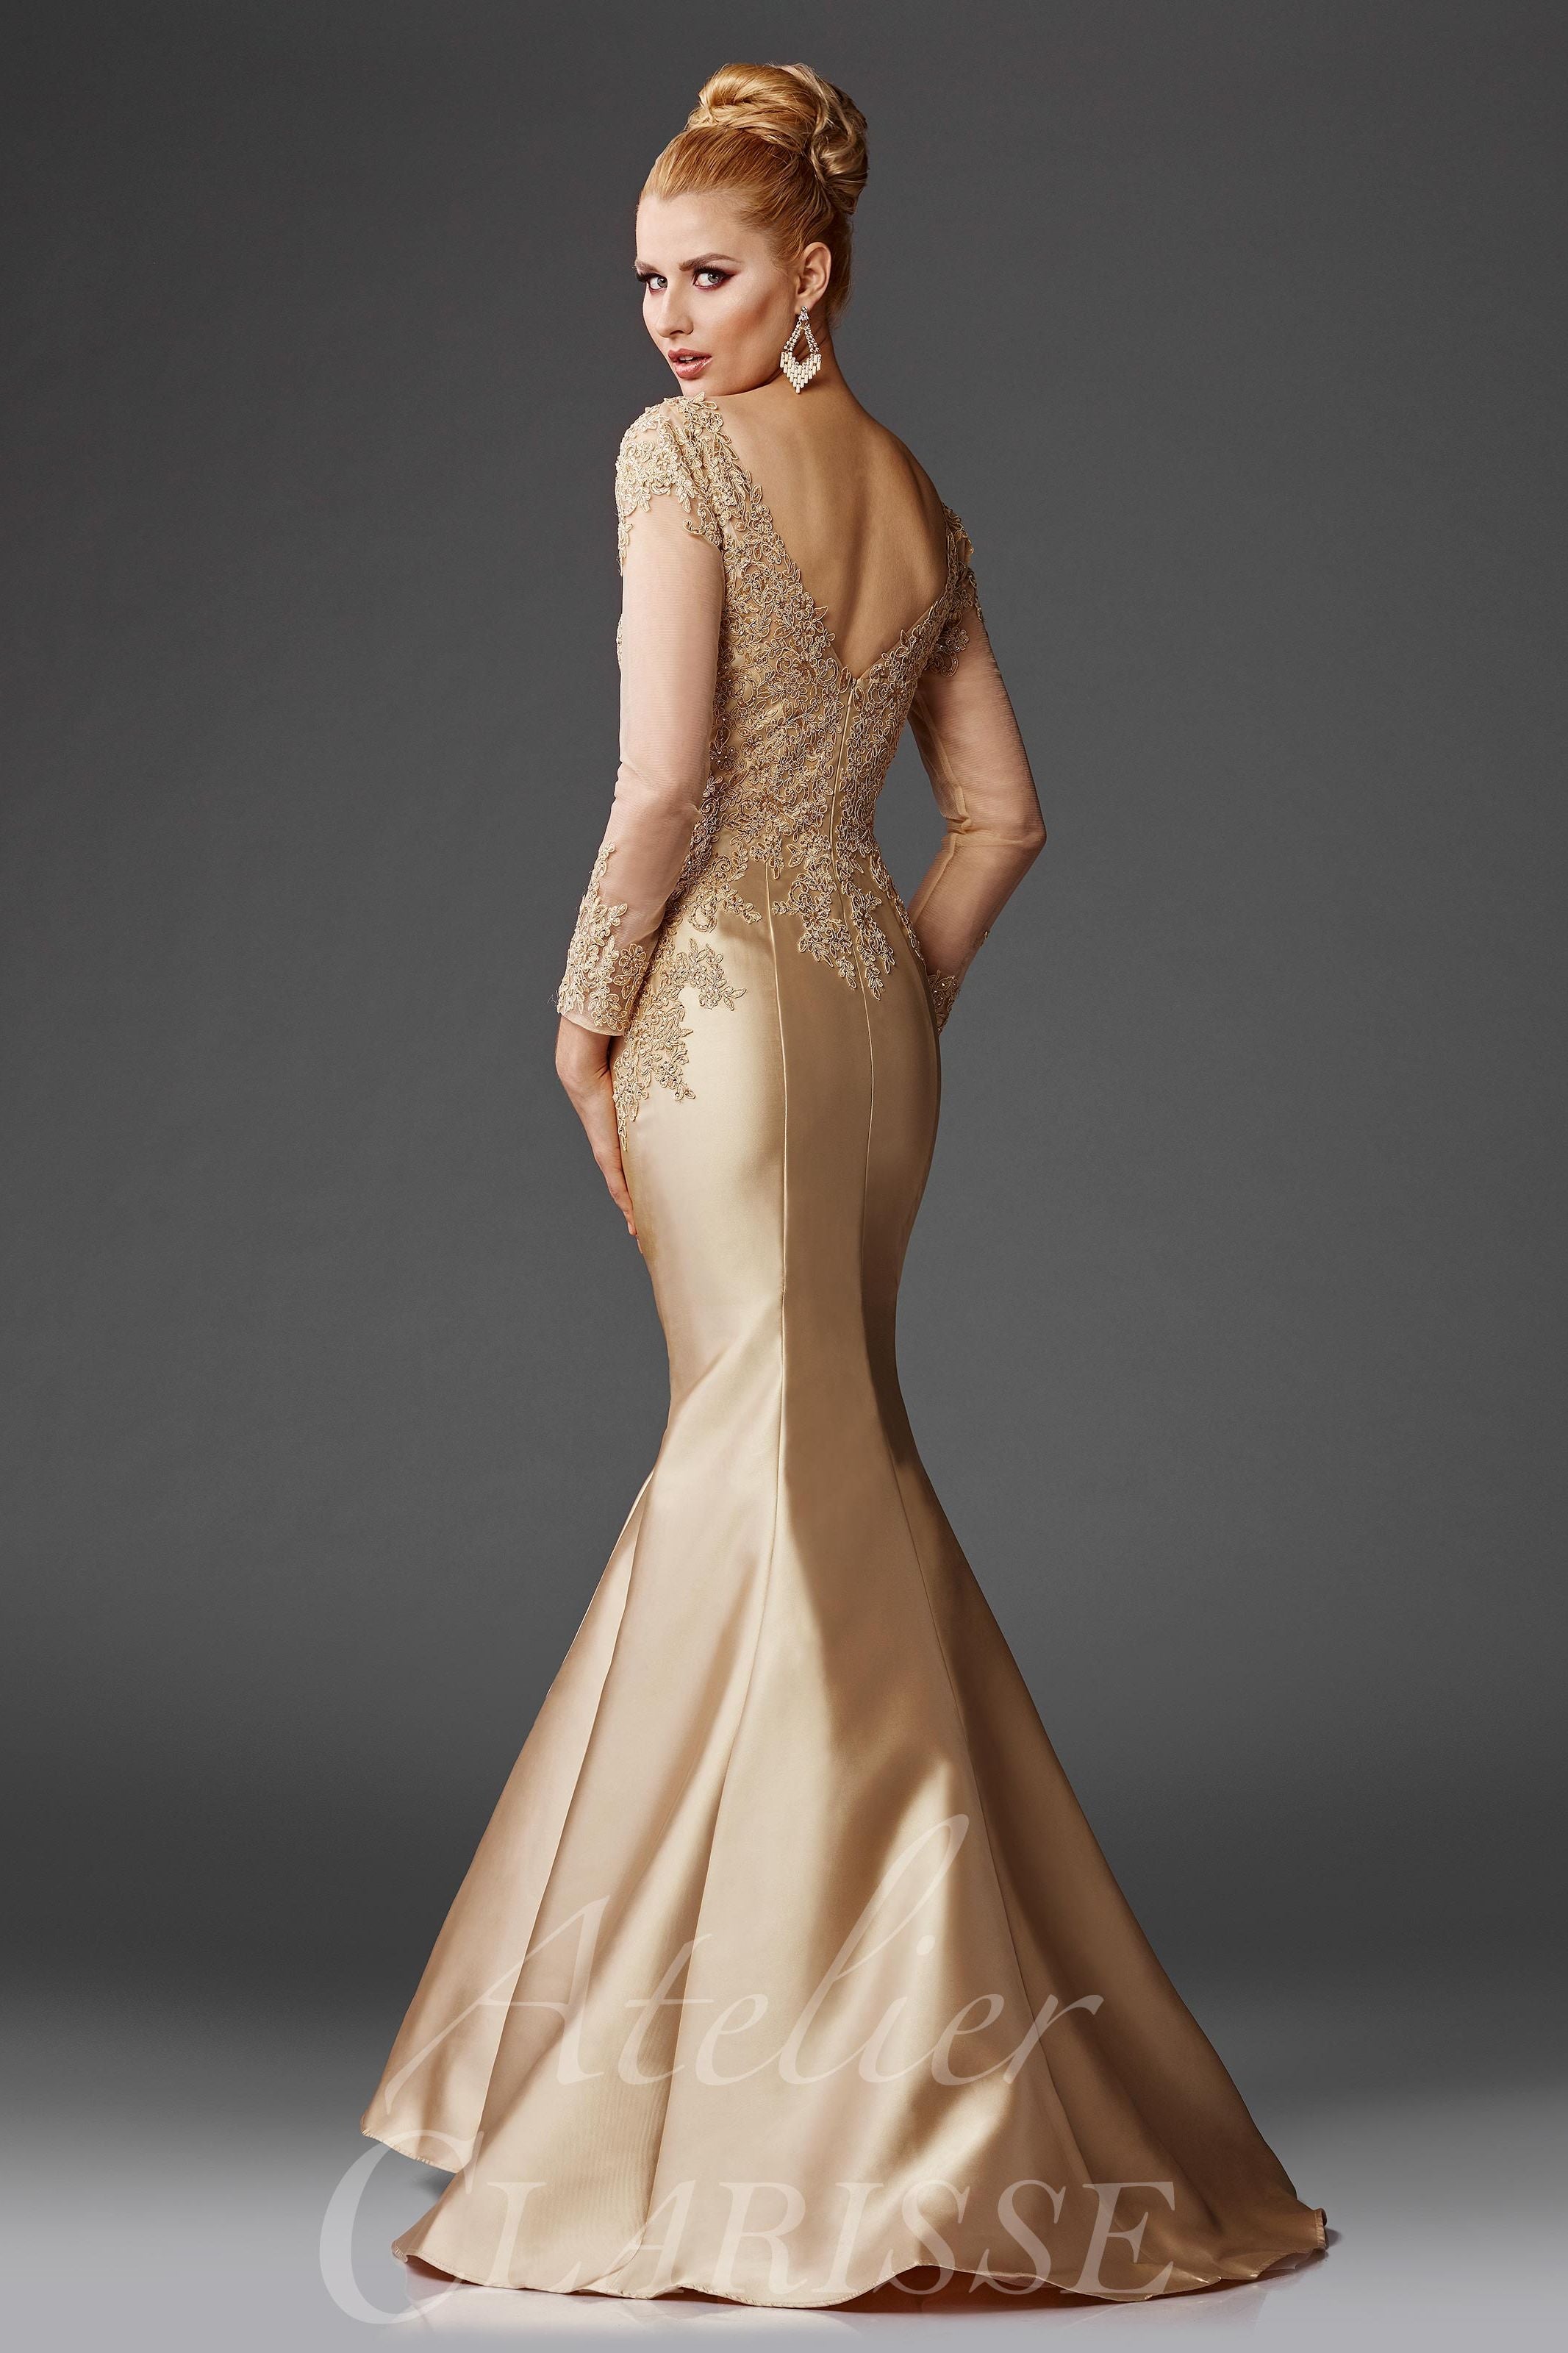 Clarisse -M6436 Lace Applique Trumpet Prom Dress